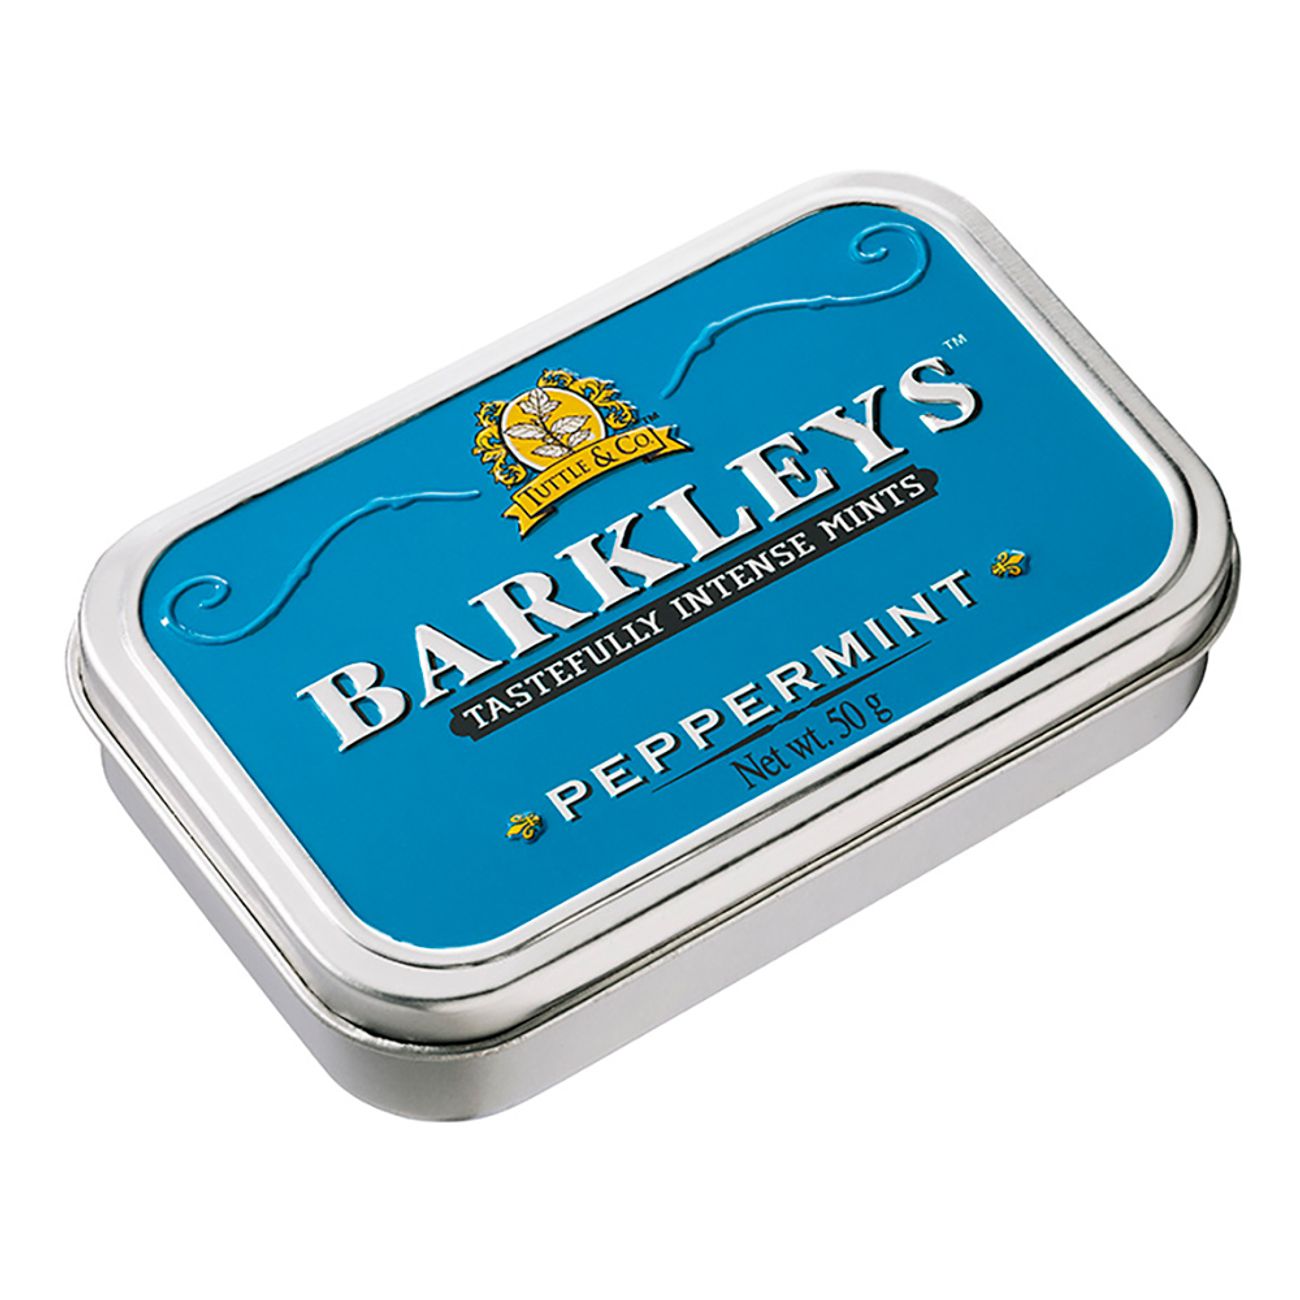 barkleys-pepparmint-79463-2